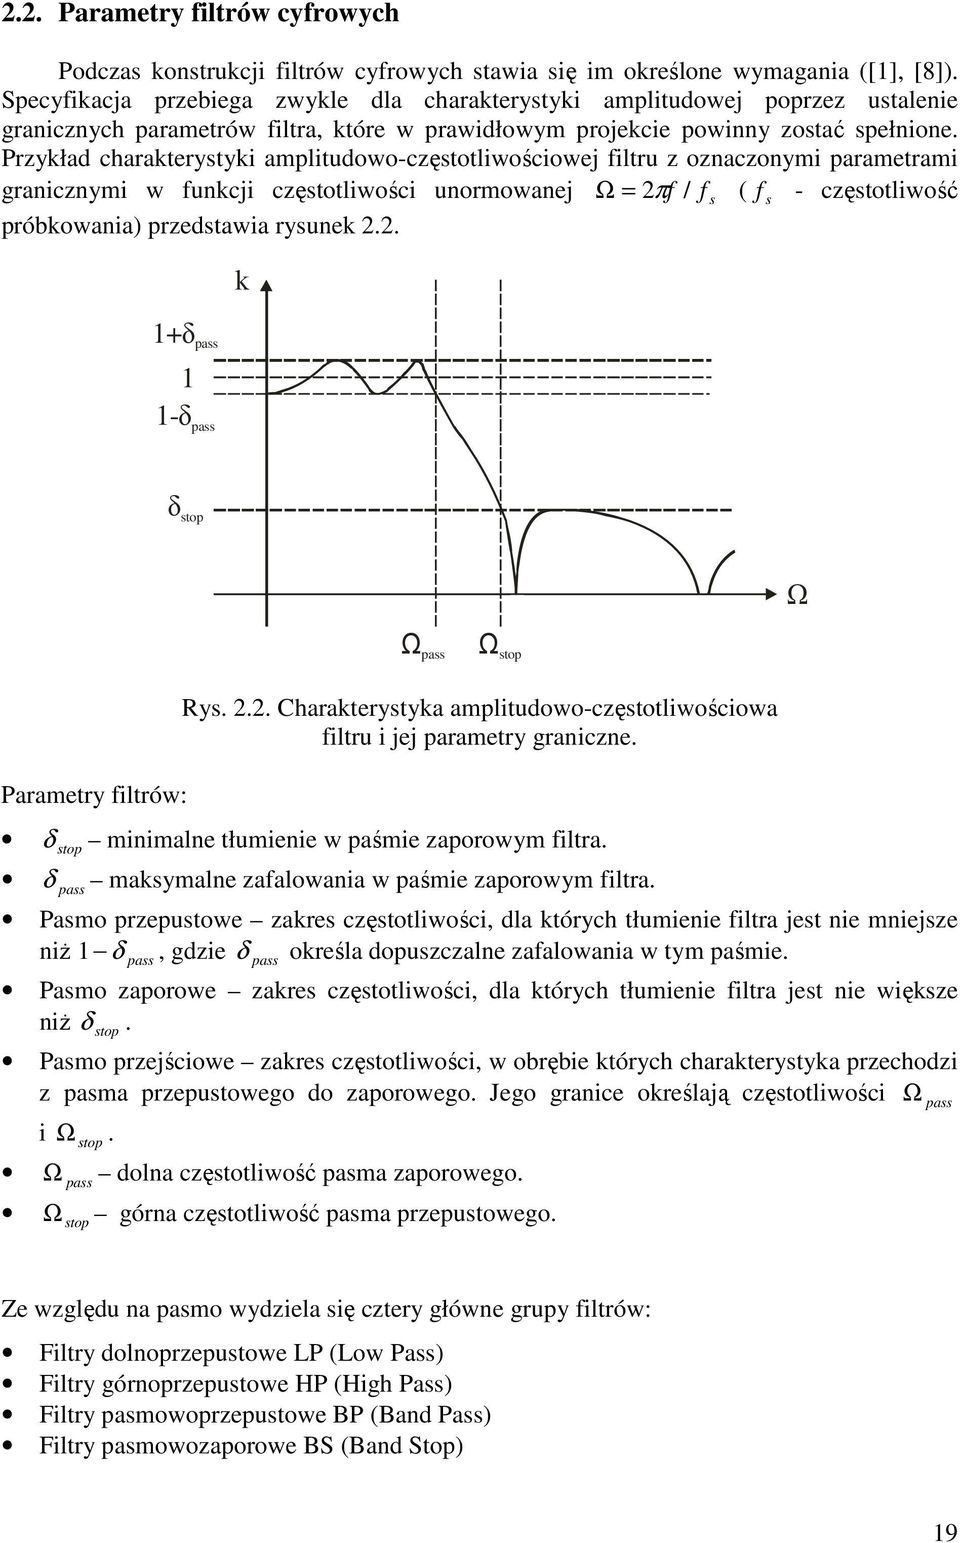 Przykład charakterystyki amplitudowo-częstotliwościowej filtru z oznaczonymi parametrami granicznymi w funkcji częstotliwości unormowanej Ω = 2πf / f s ( f s - częstotliwość próbkowania) przedstawia